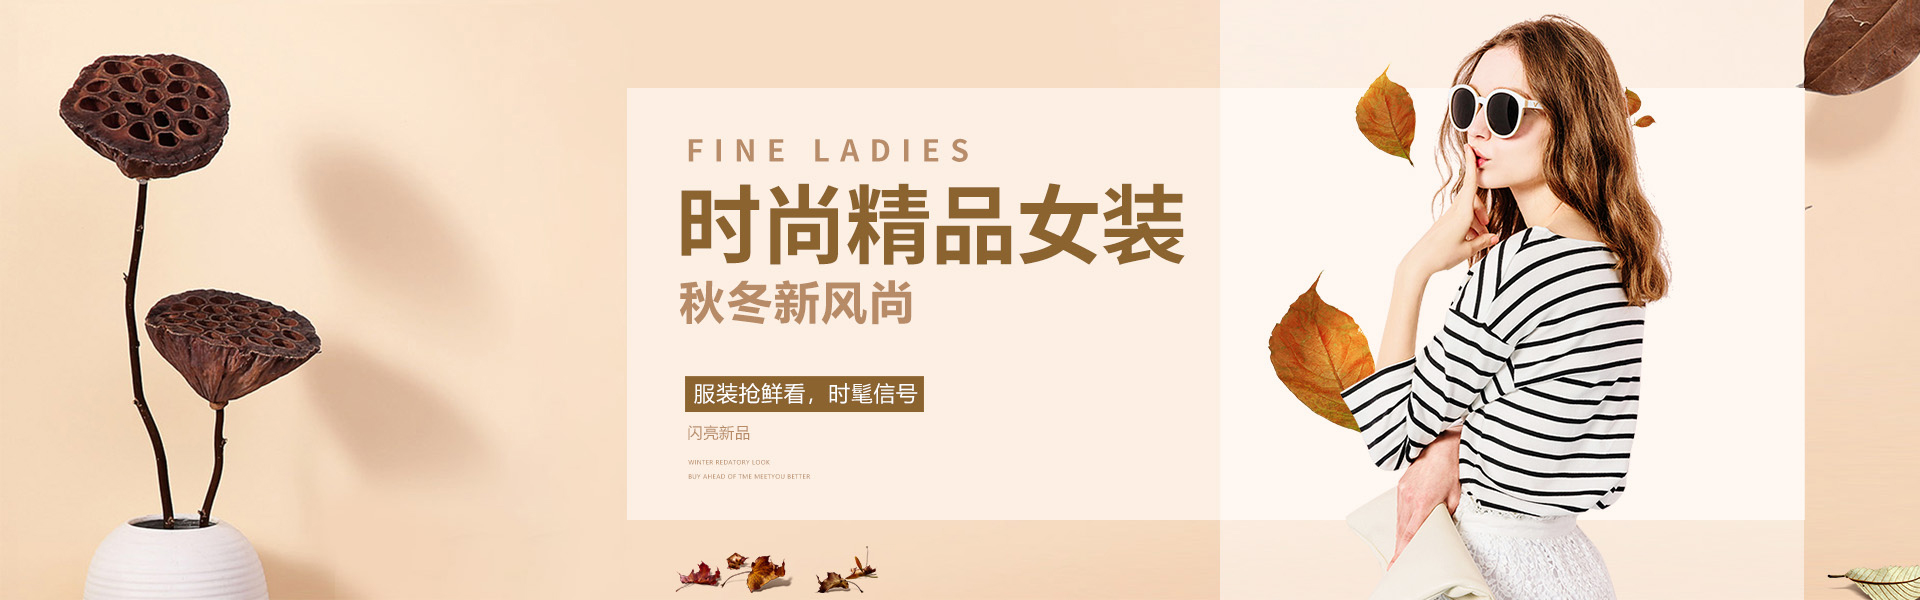 服装销售商家_郑州女装服装项目合作网站-仁寿威尔兹服装店